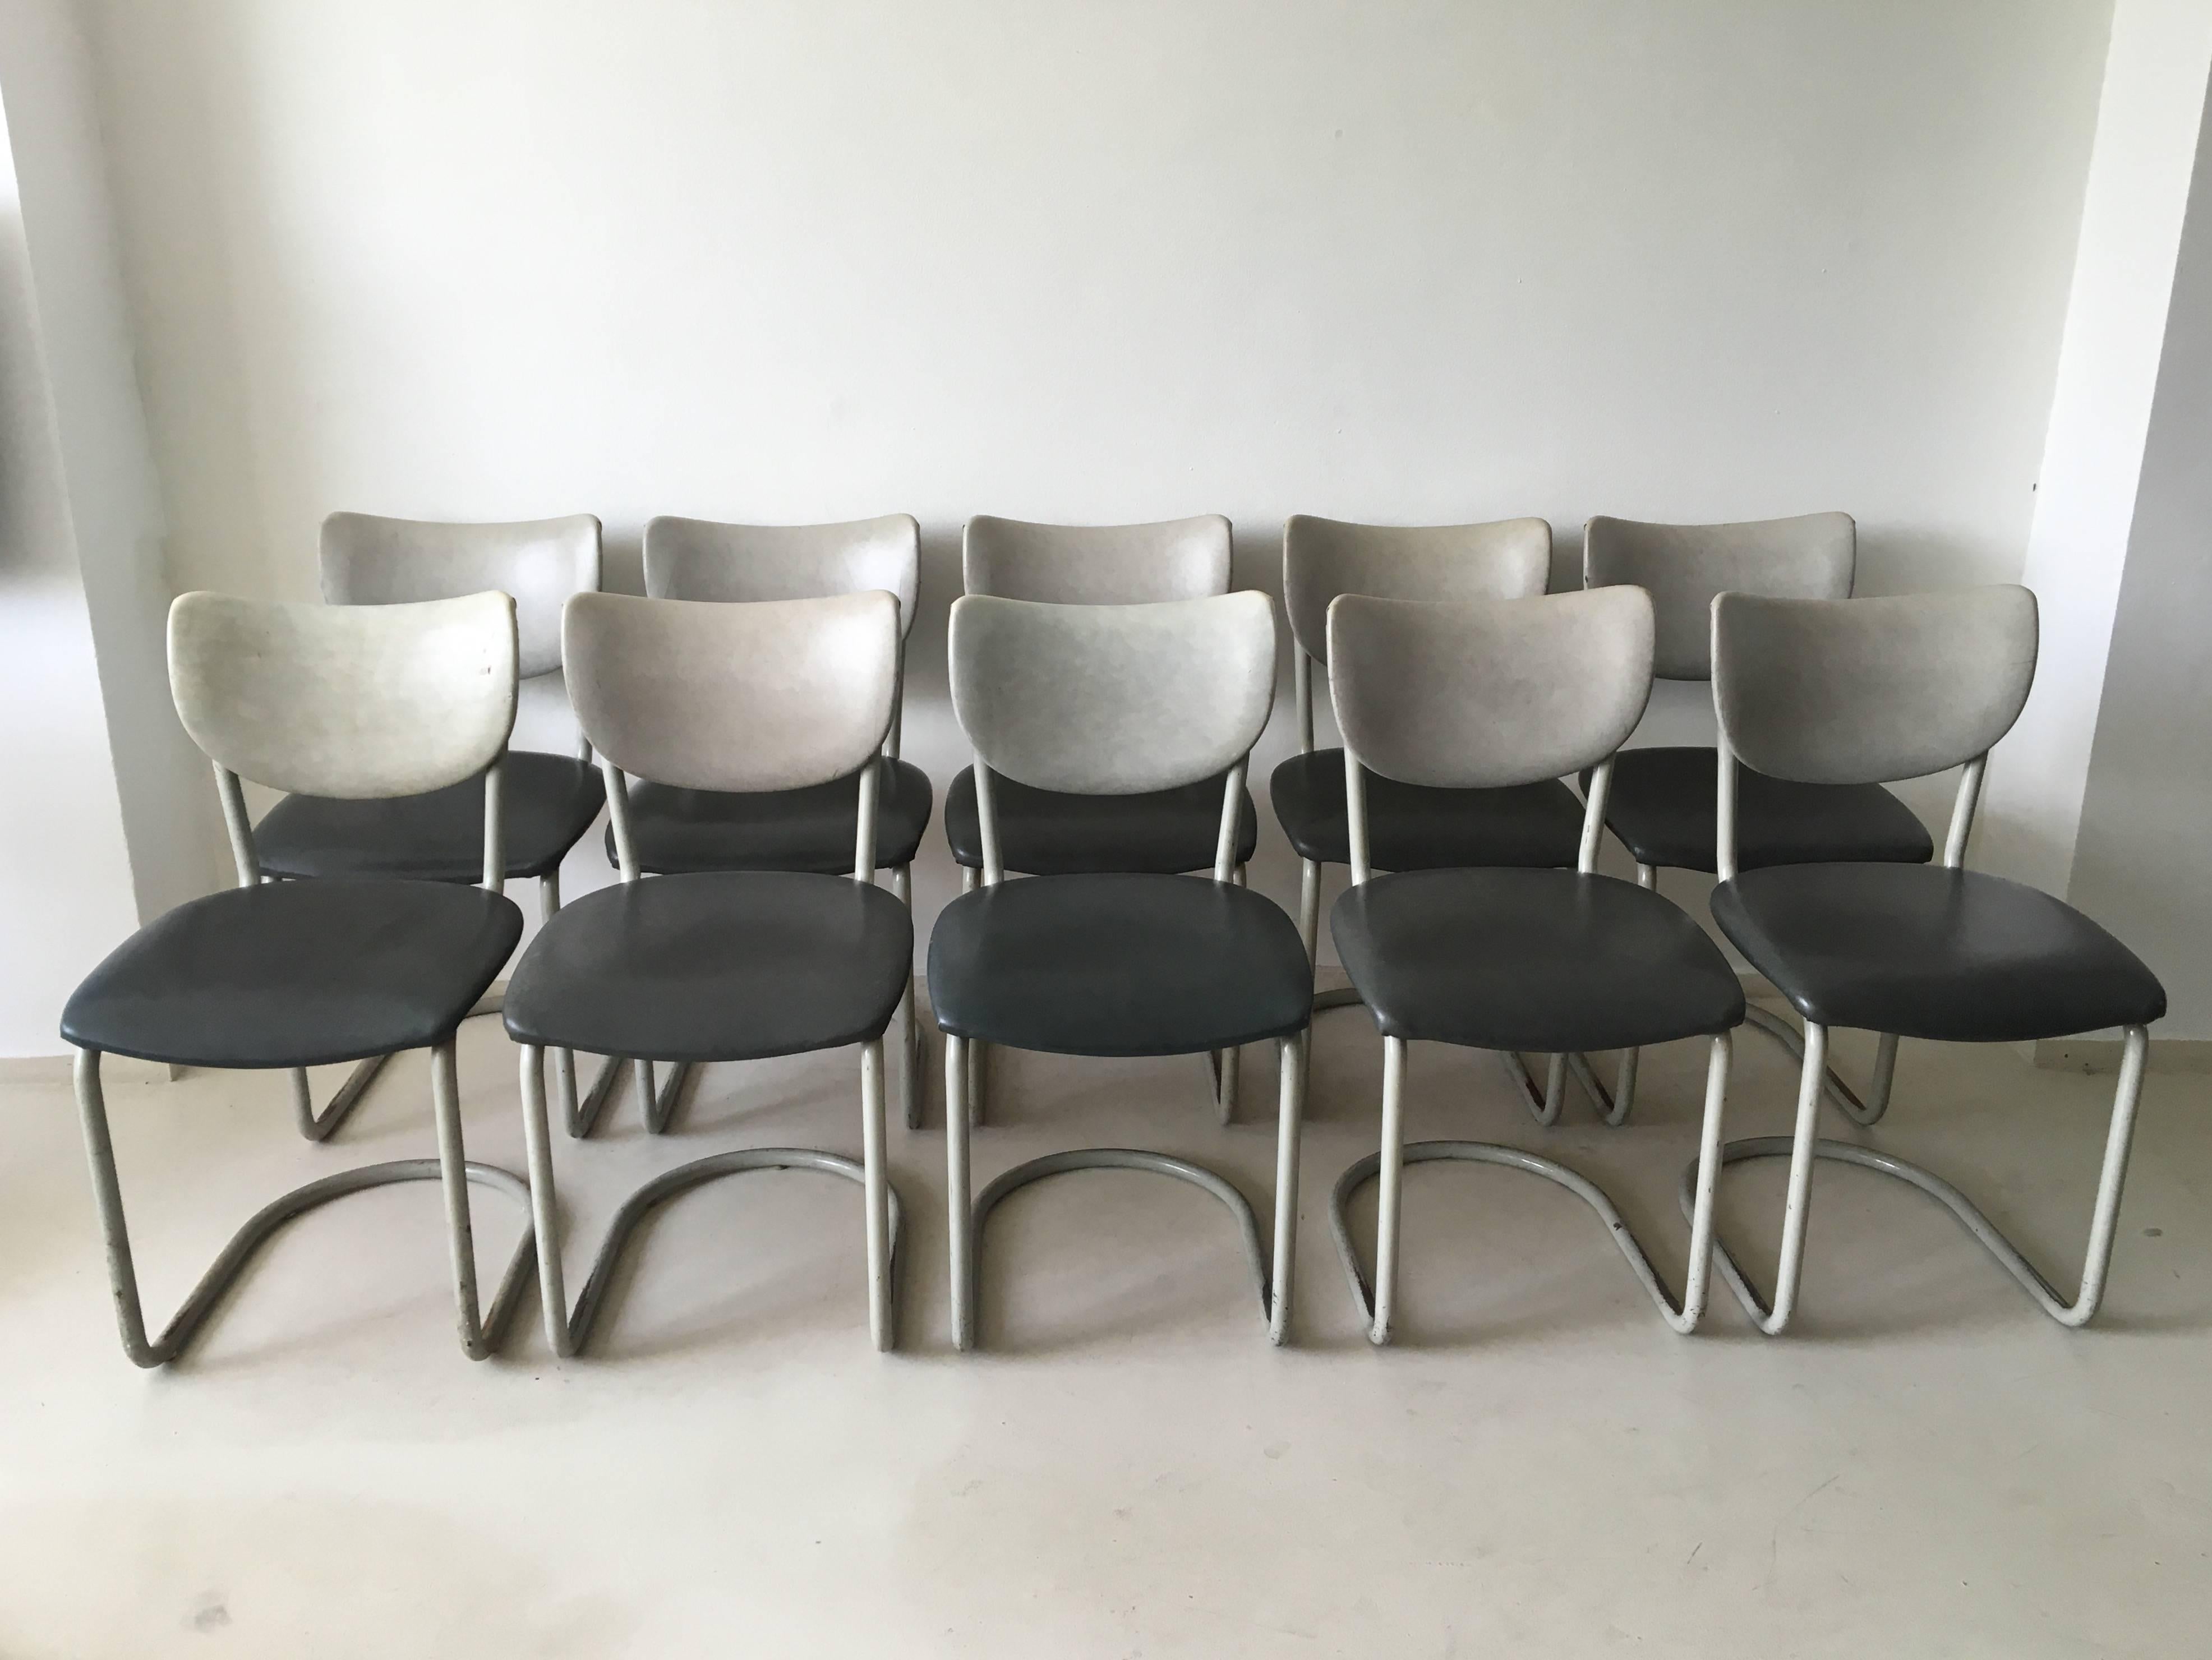 Ces chaises (de salle à manger) ont été conçues par De Wit, Schiedam dans les années 1950. Les chaises sont constituées d'une structure métallique polie et revêtue. La sellerie est en similicuir gris et anthracite. Elles ont un look industriel et